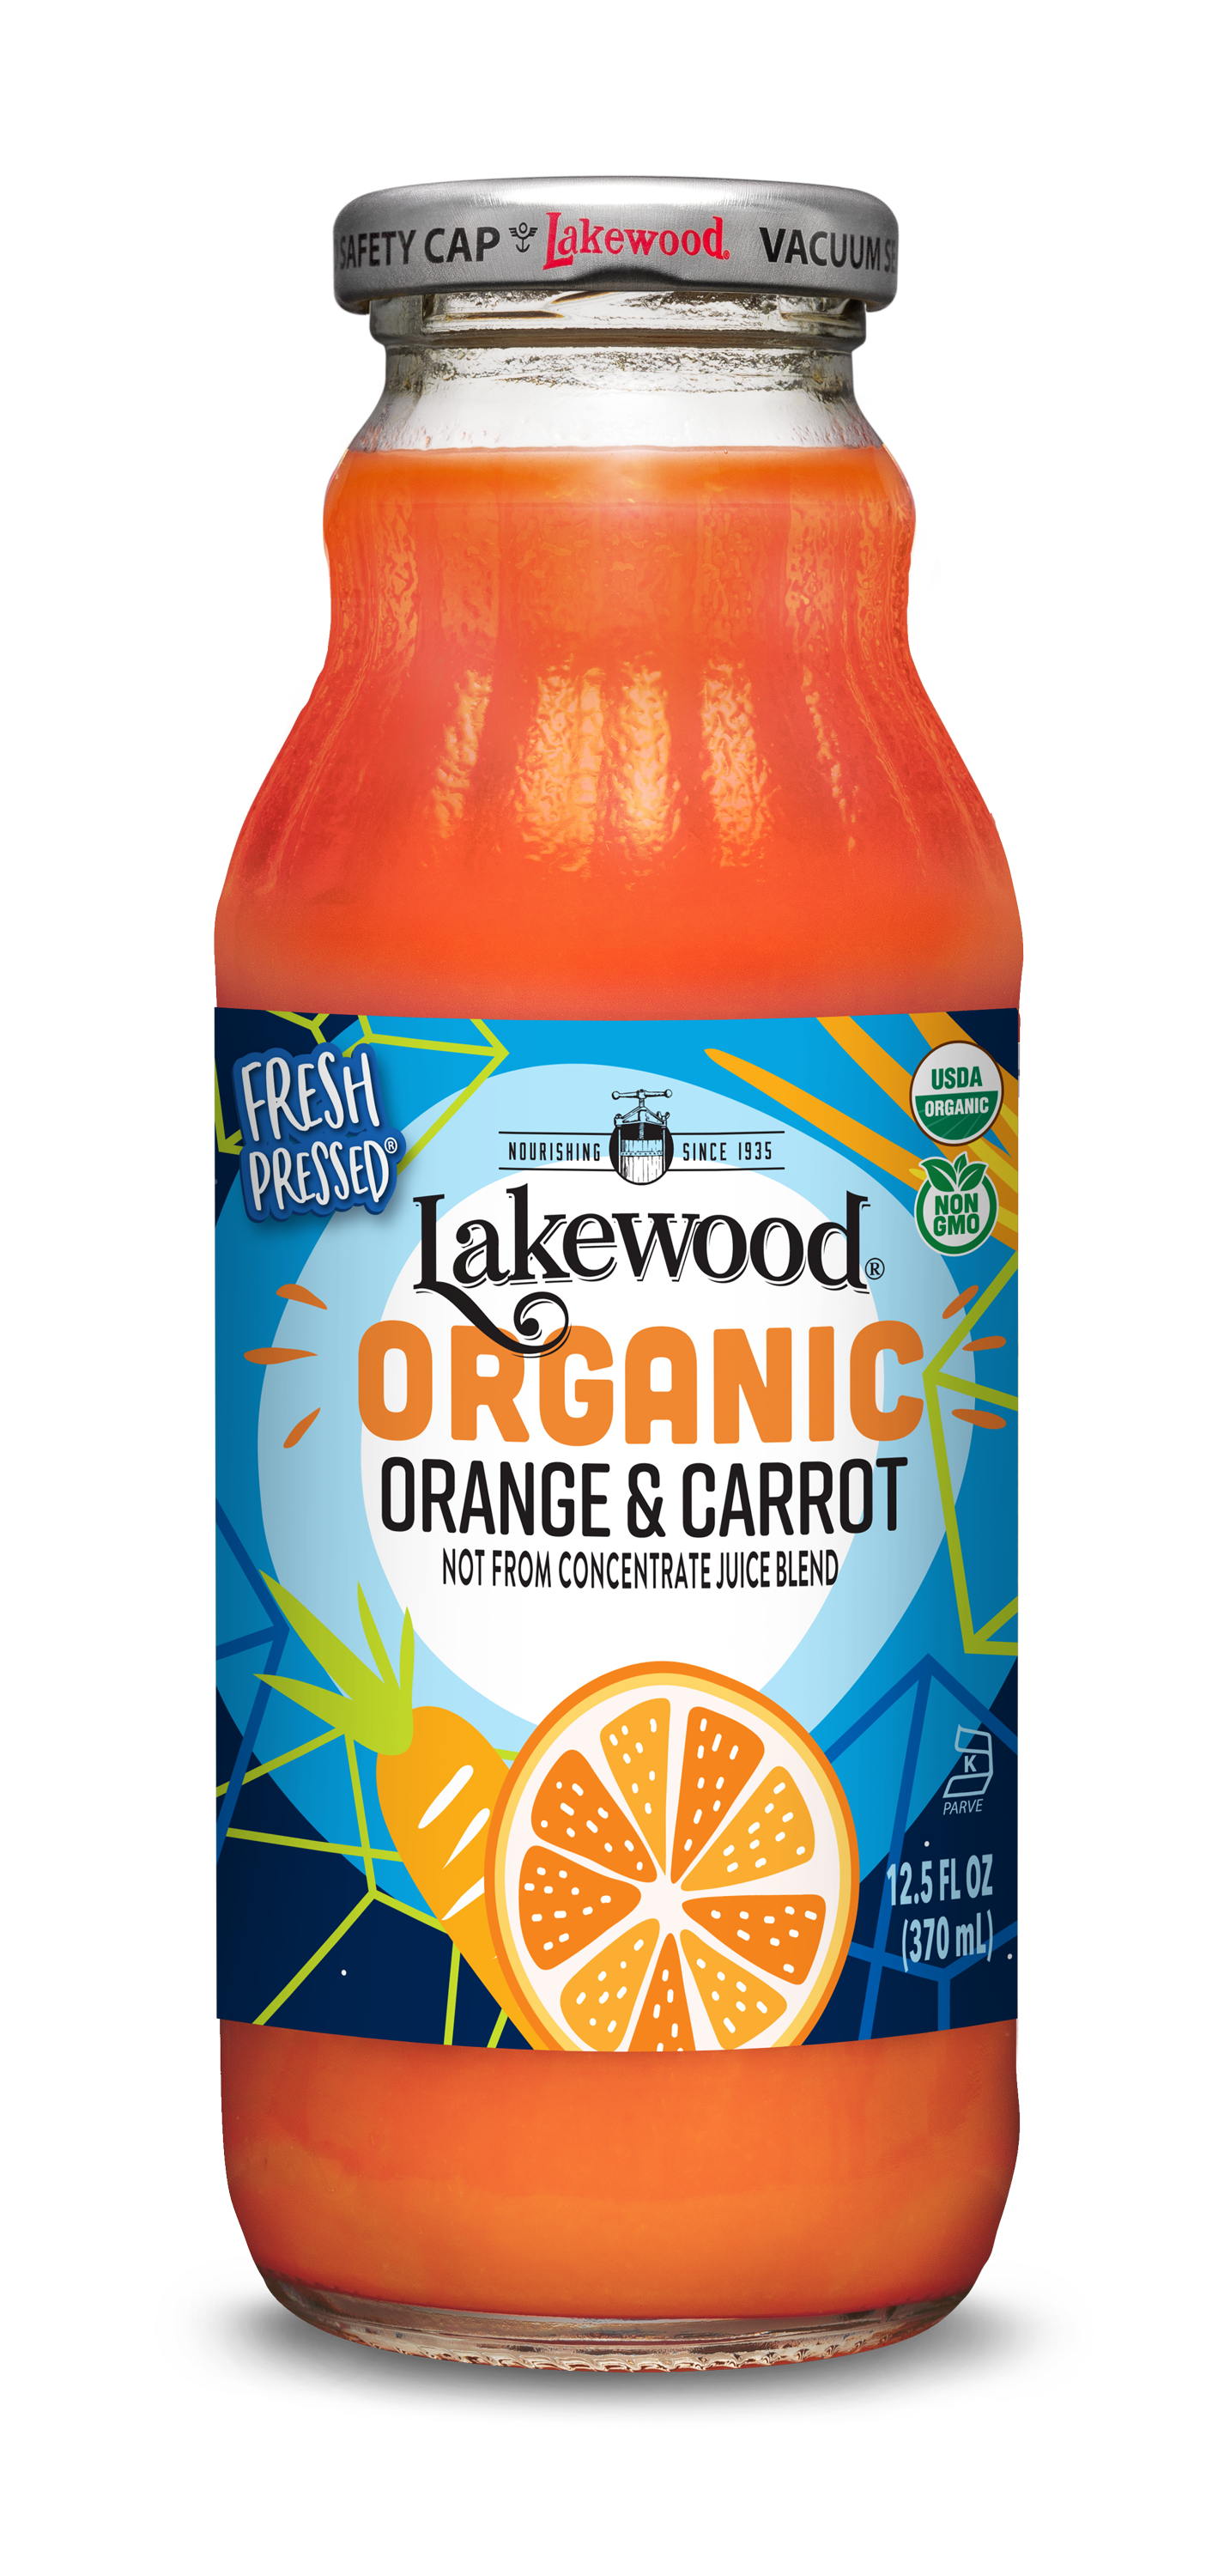 lakewood-organic-orange-carrot-juice-blend-fresh-pressed